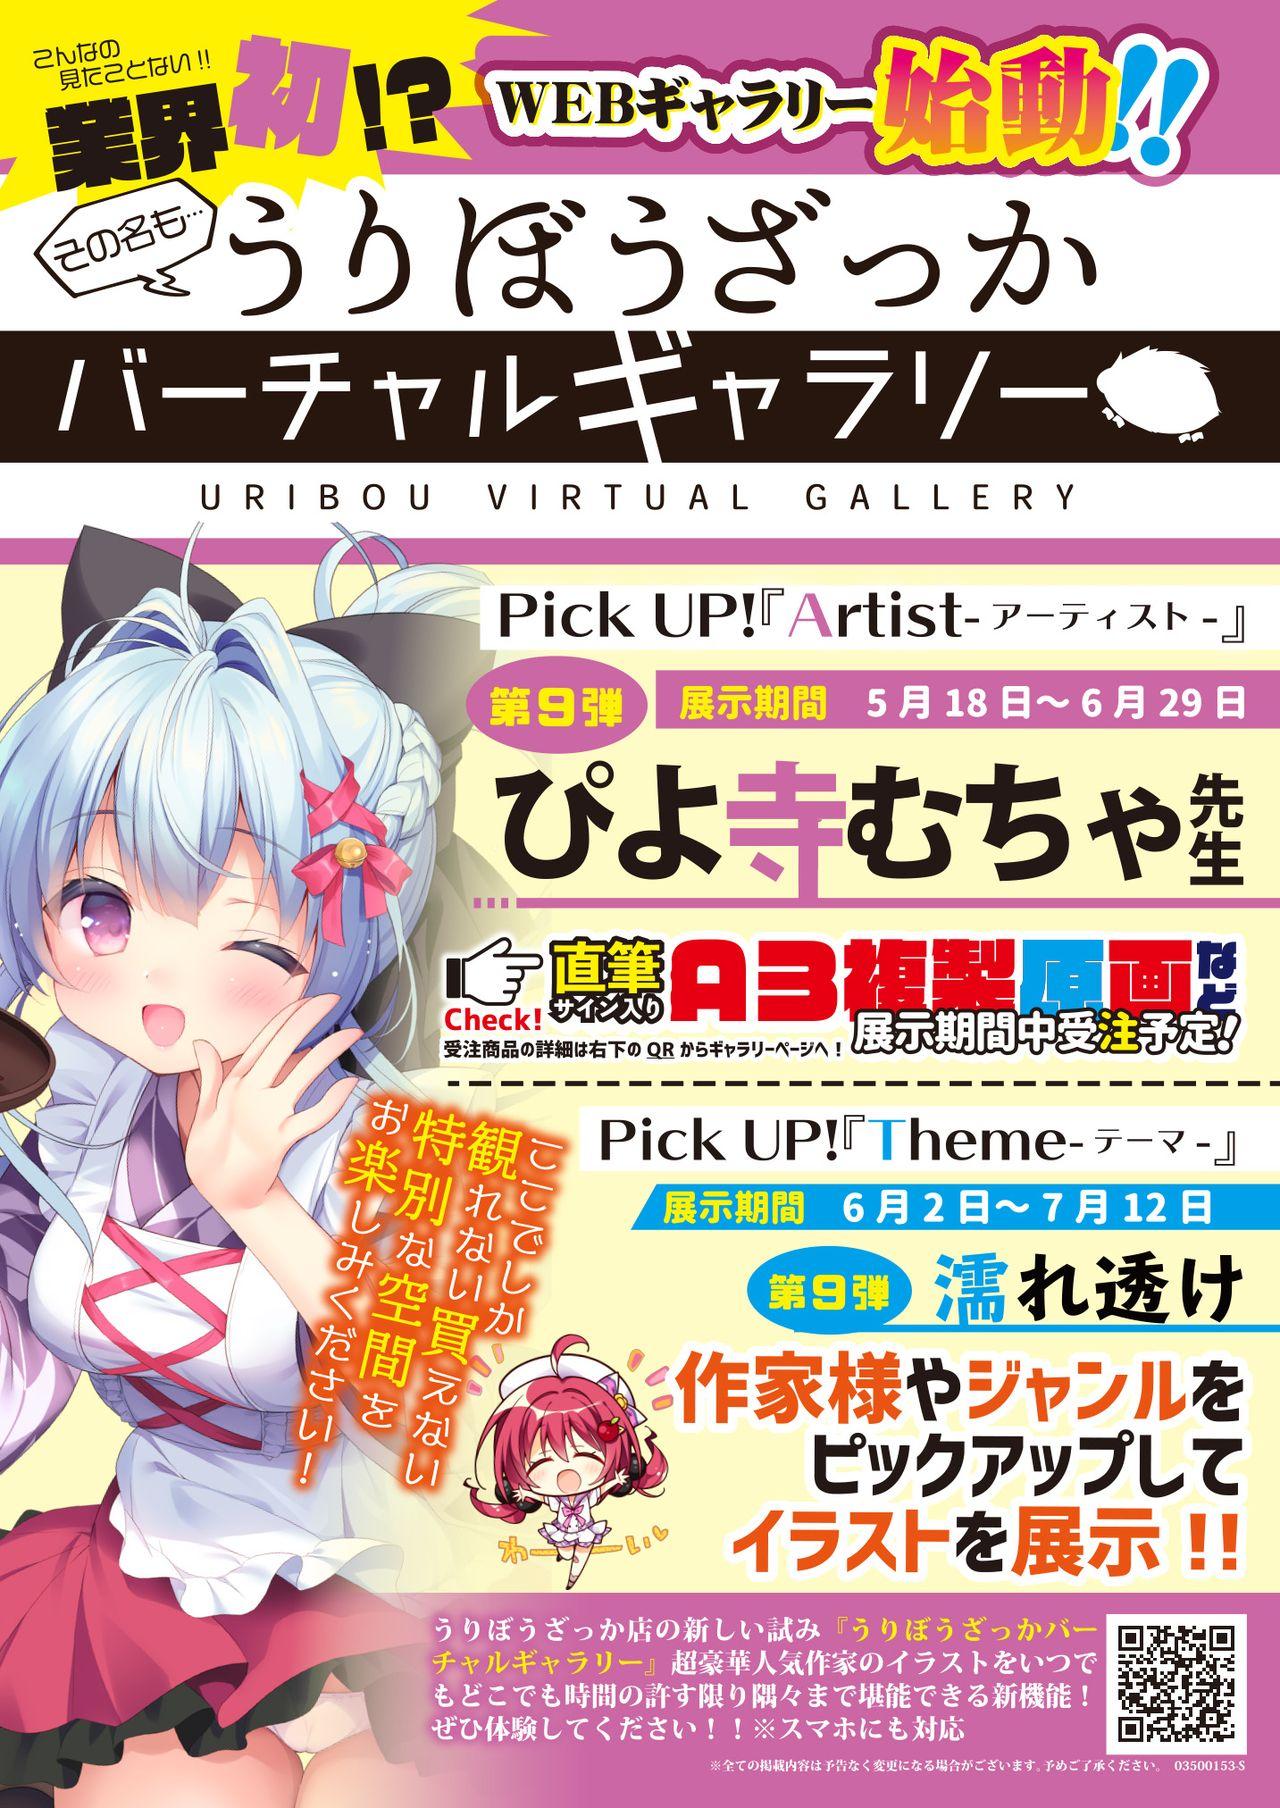 月刊うりぼうざっか店 2020年5月29日発行号 10